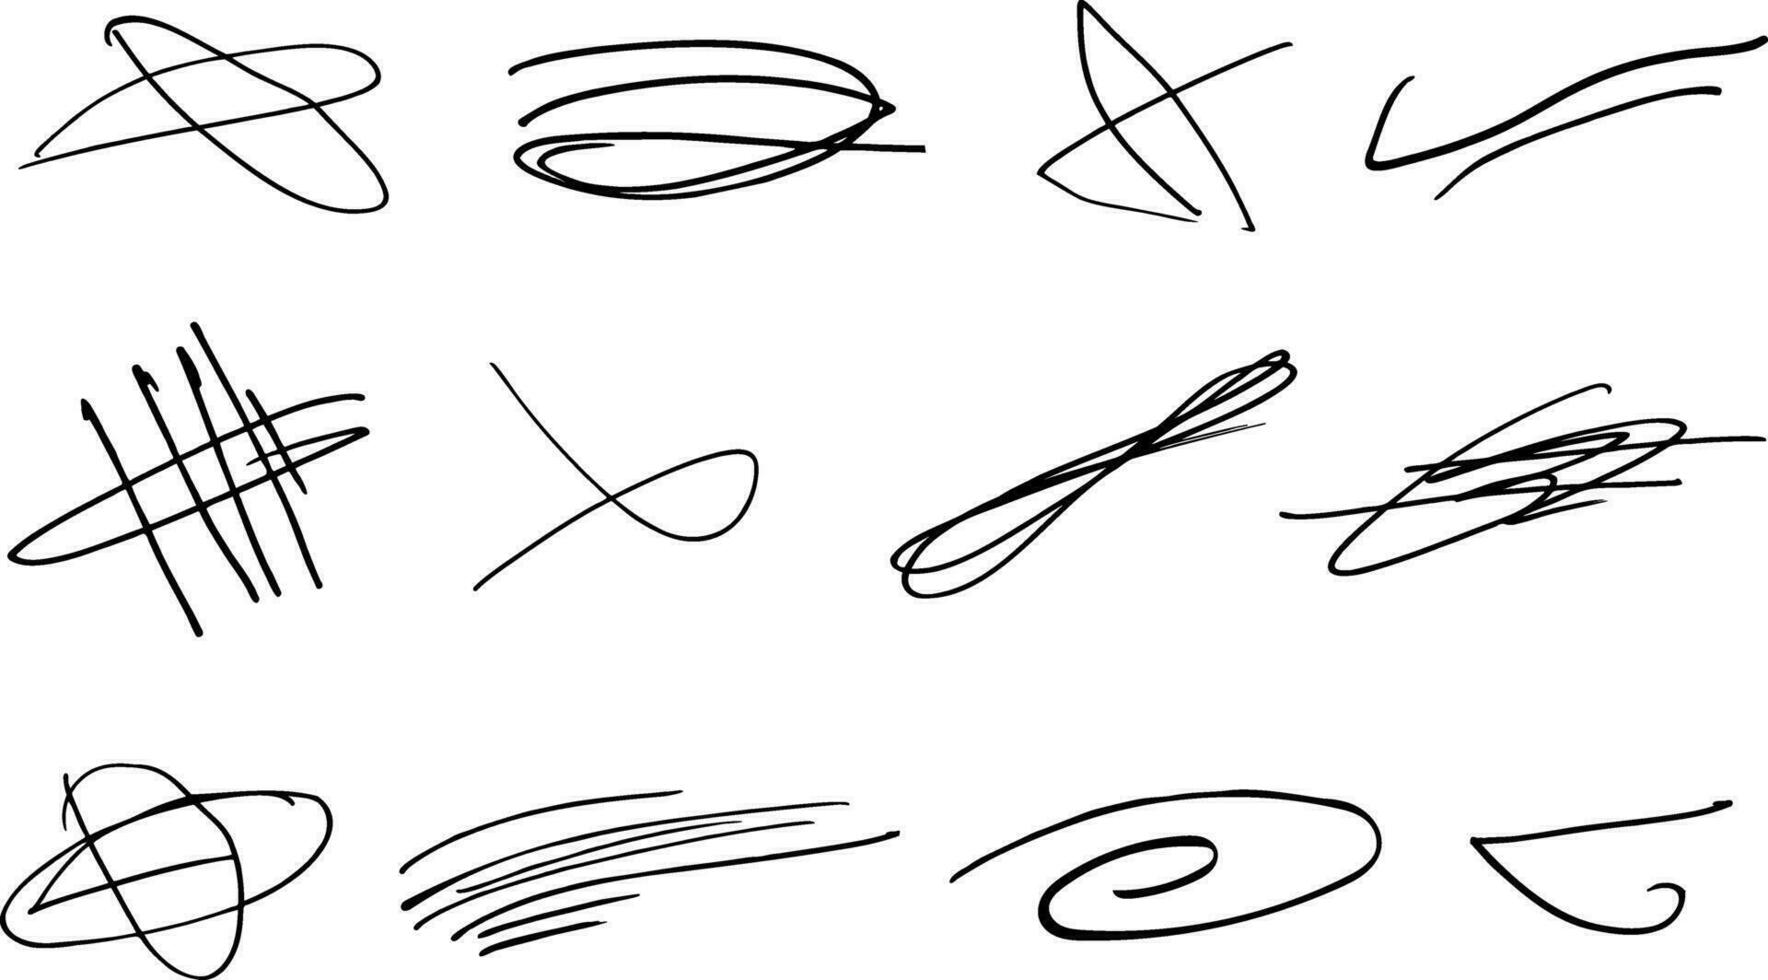 rápido retorcido y cruzado tachados conjunto de realce líneas y firmas cepillo carrera marcadores o tinta.doodle vector gráfico elementos.